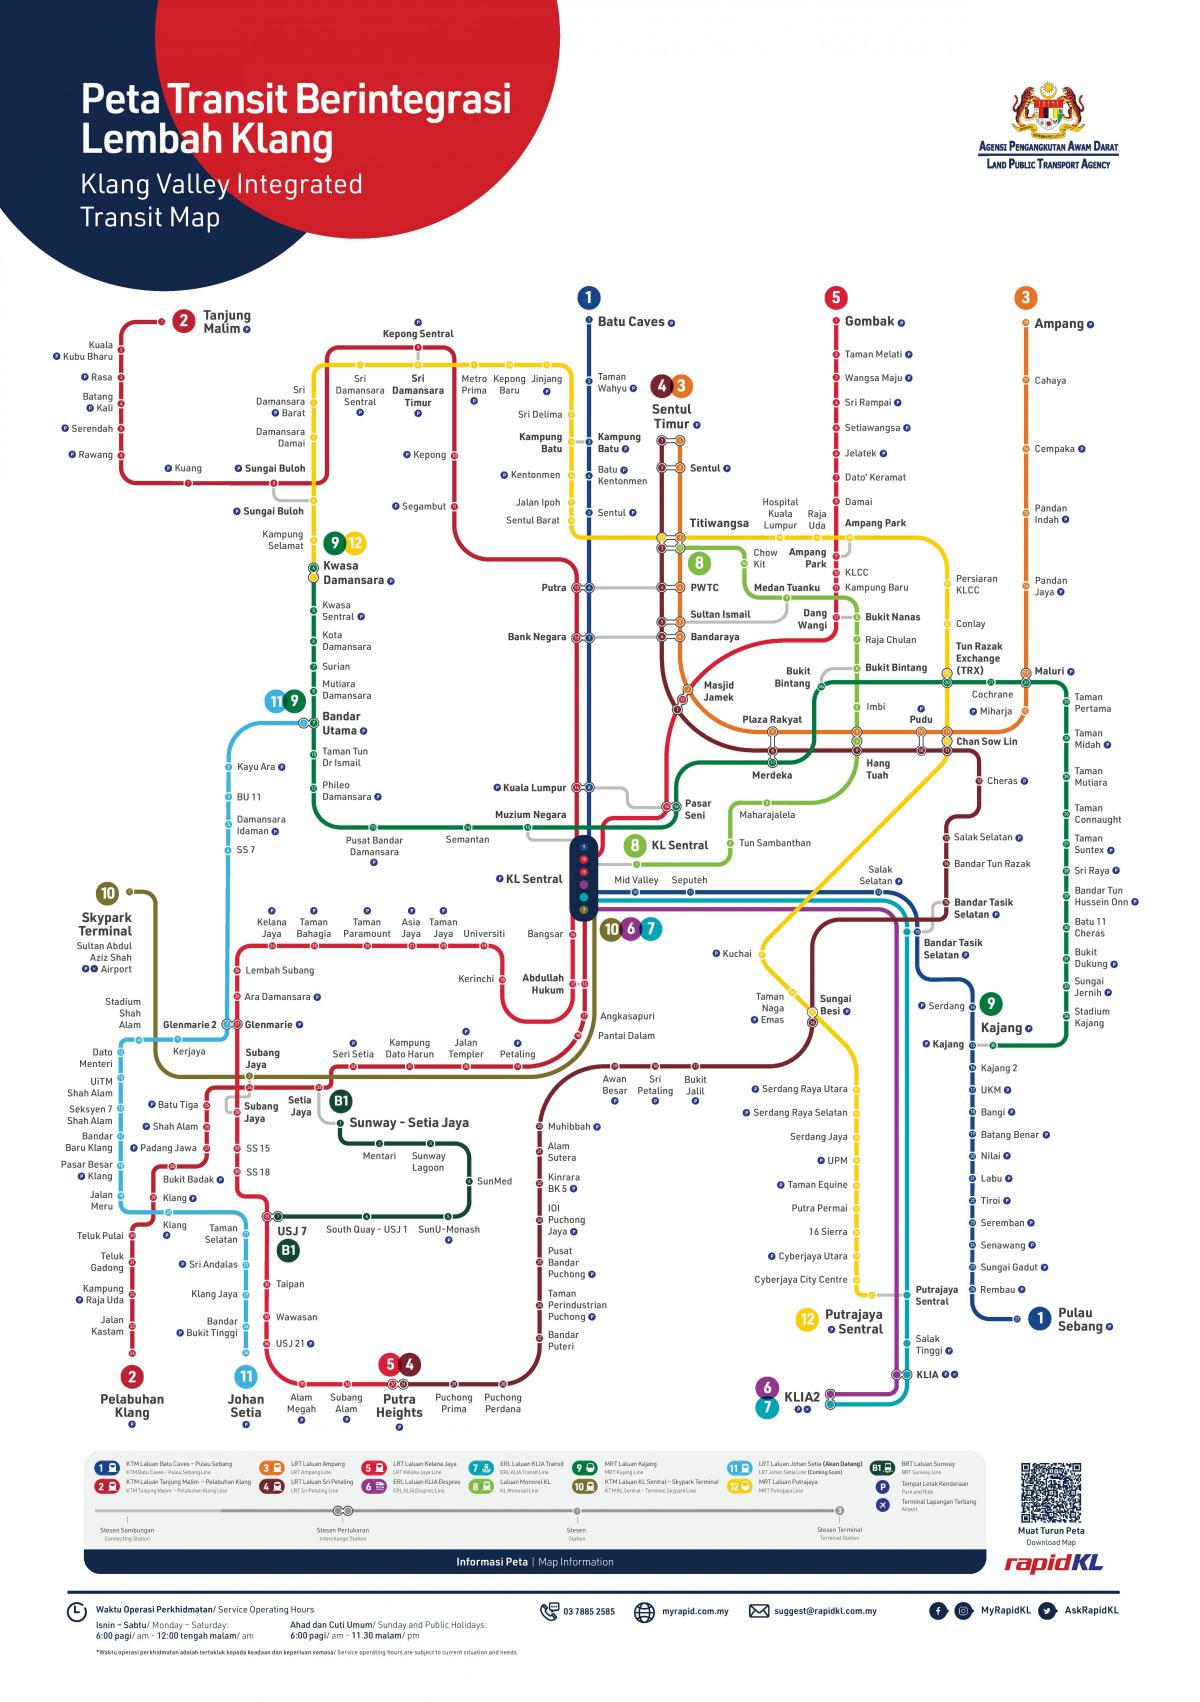 Kuala Lumpur (KL) railway stations map